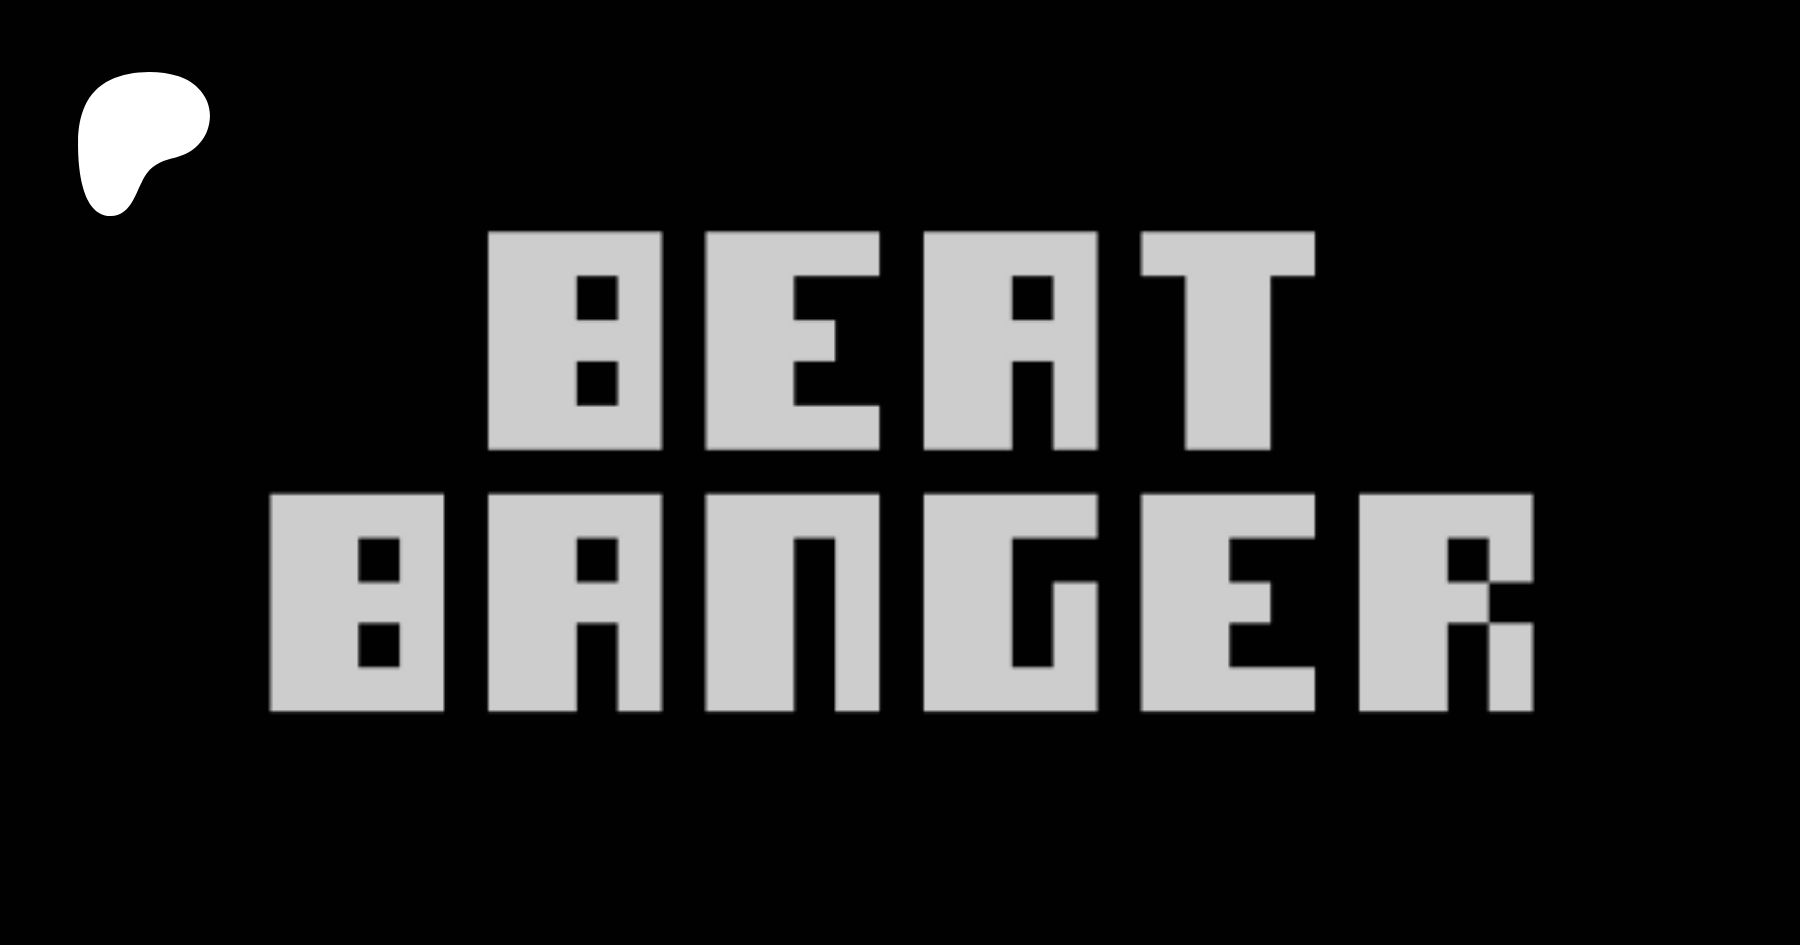 Beat_banger